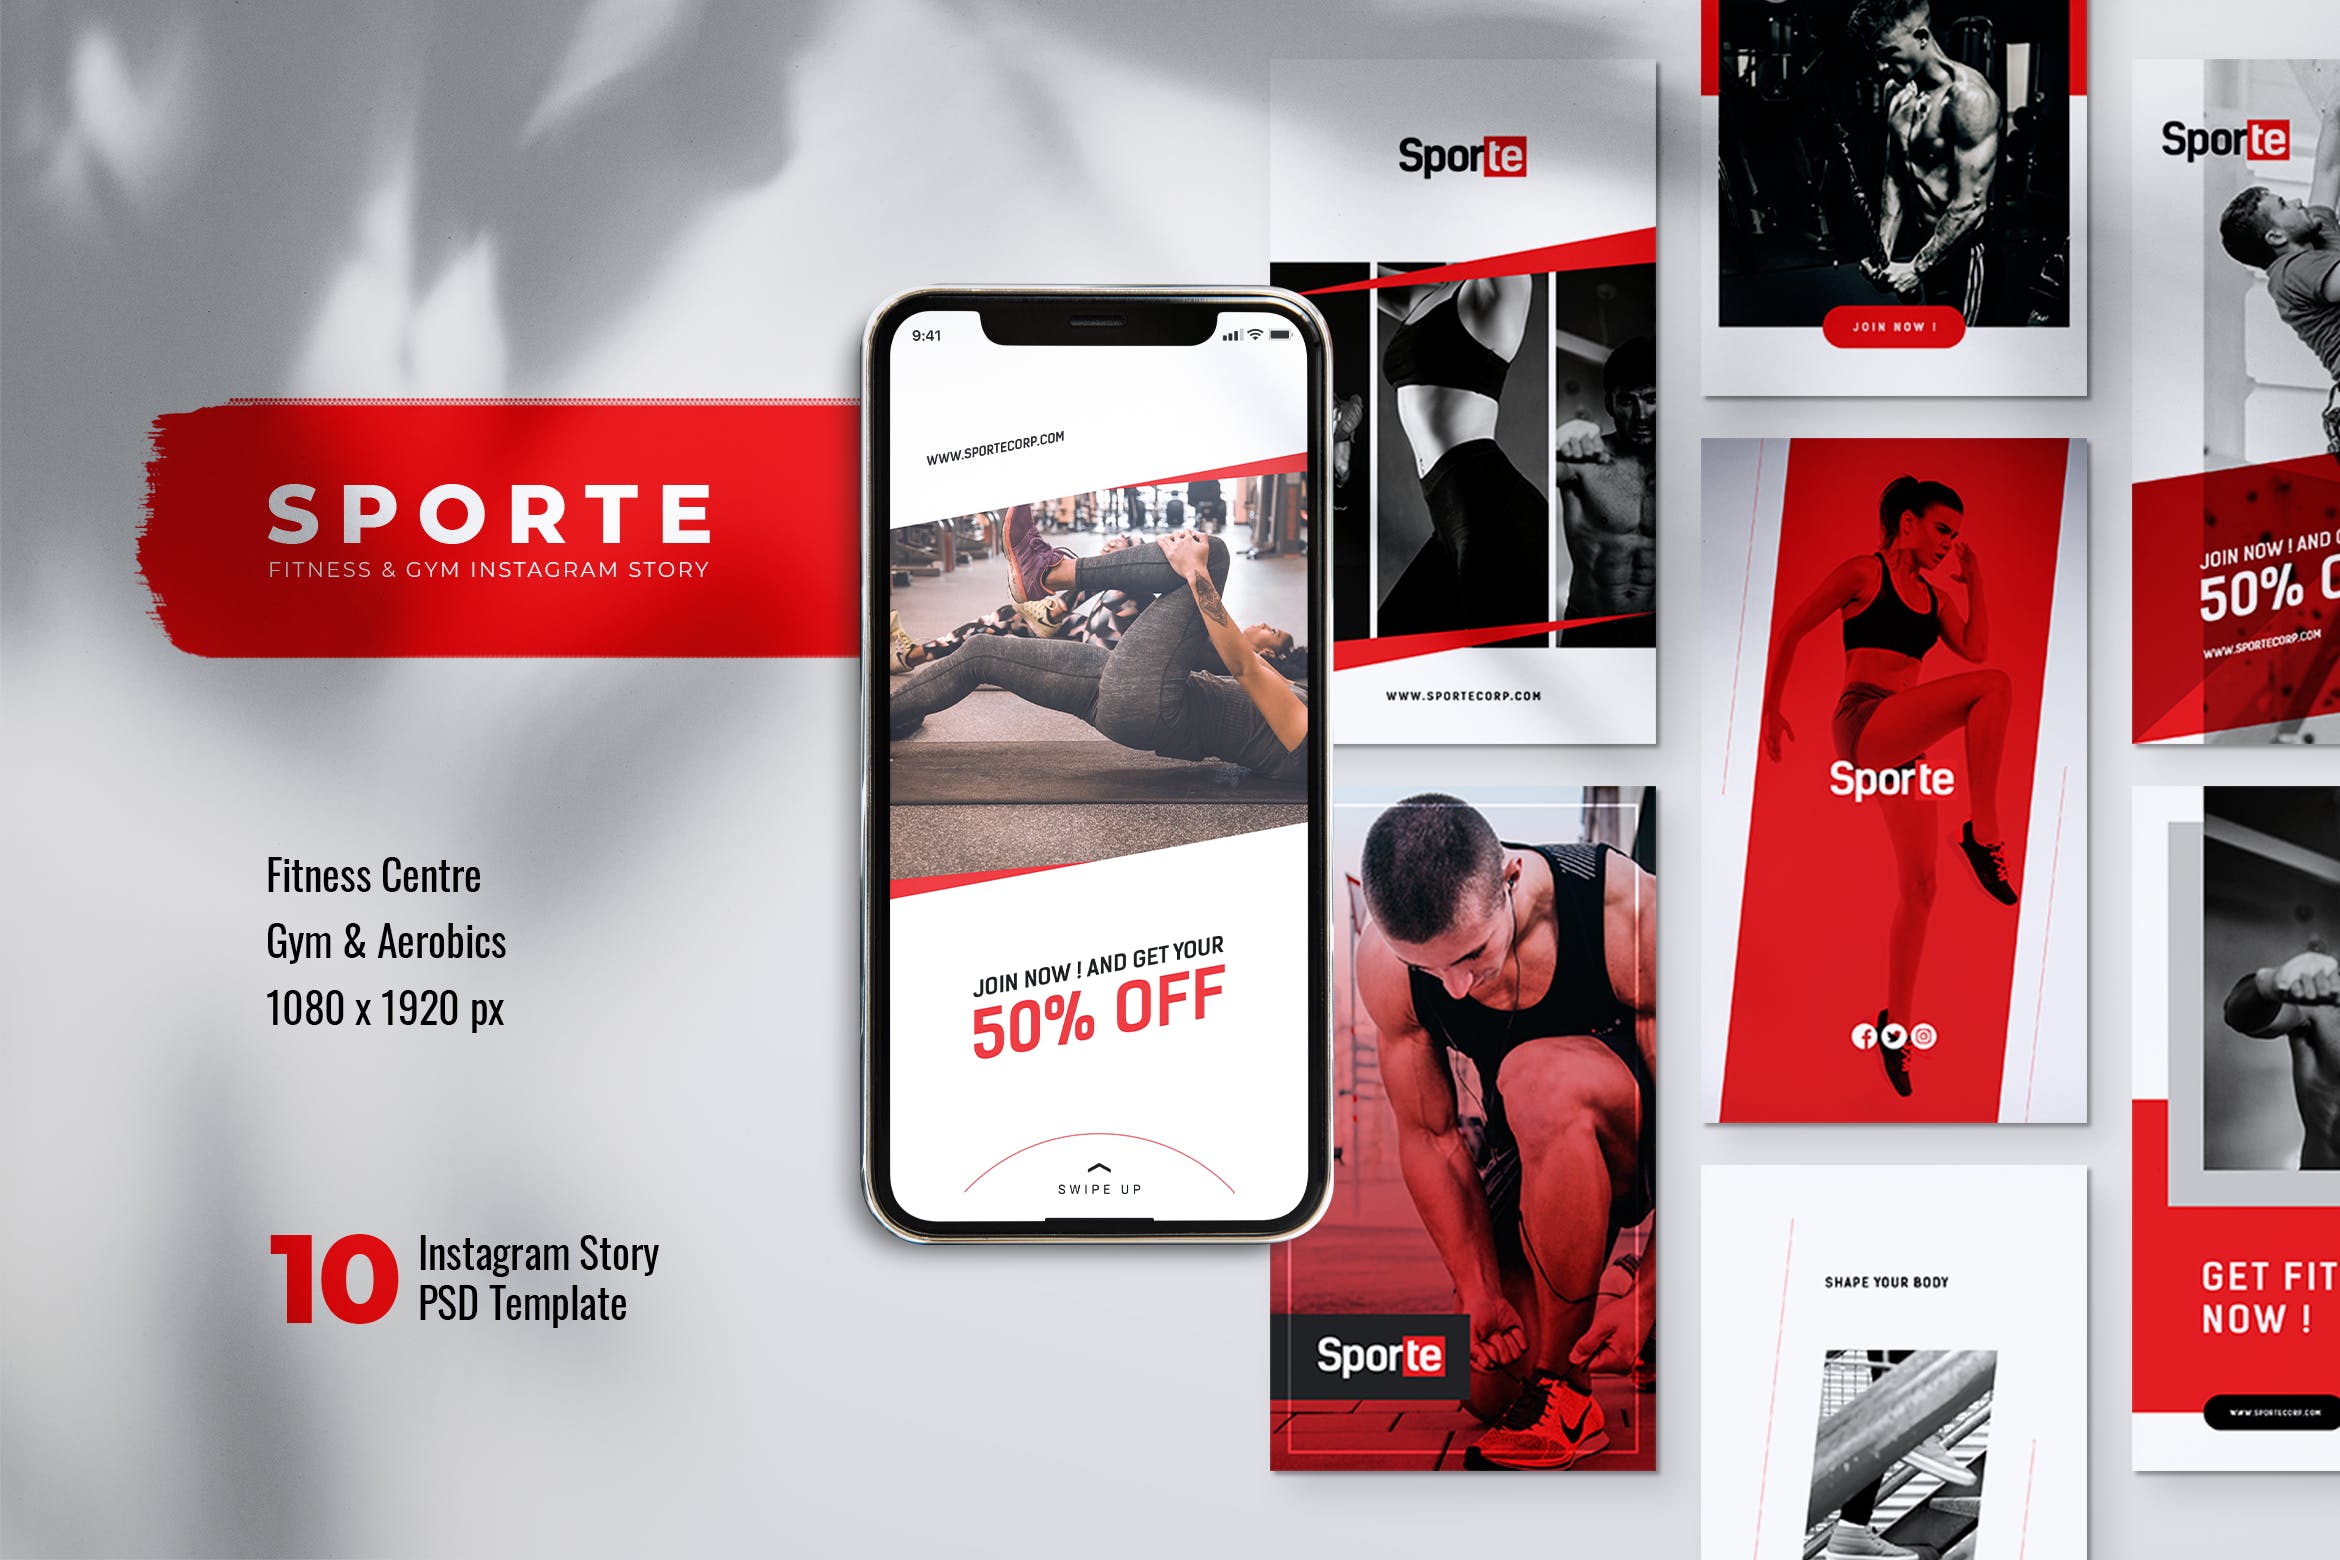 体育运动&健身主题Instagram品牌故事设计素材 SPORTE Sport Fitness & Gym Instagram Stories插图